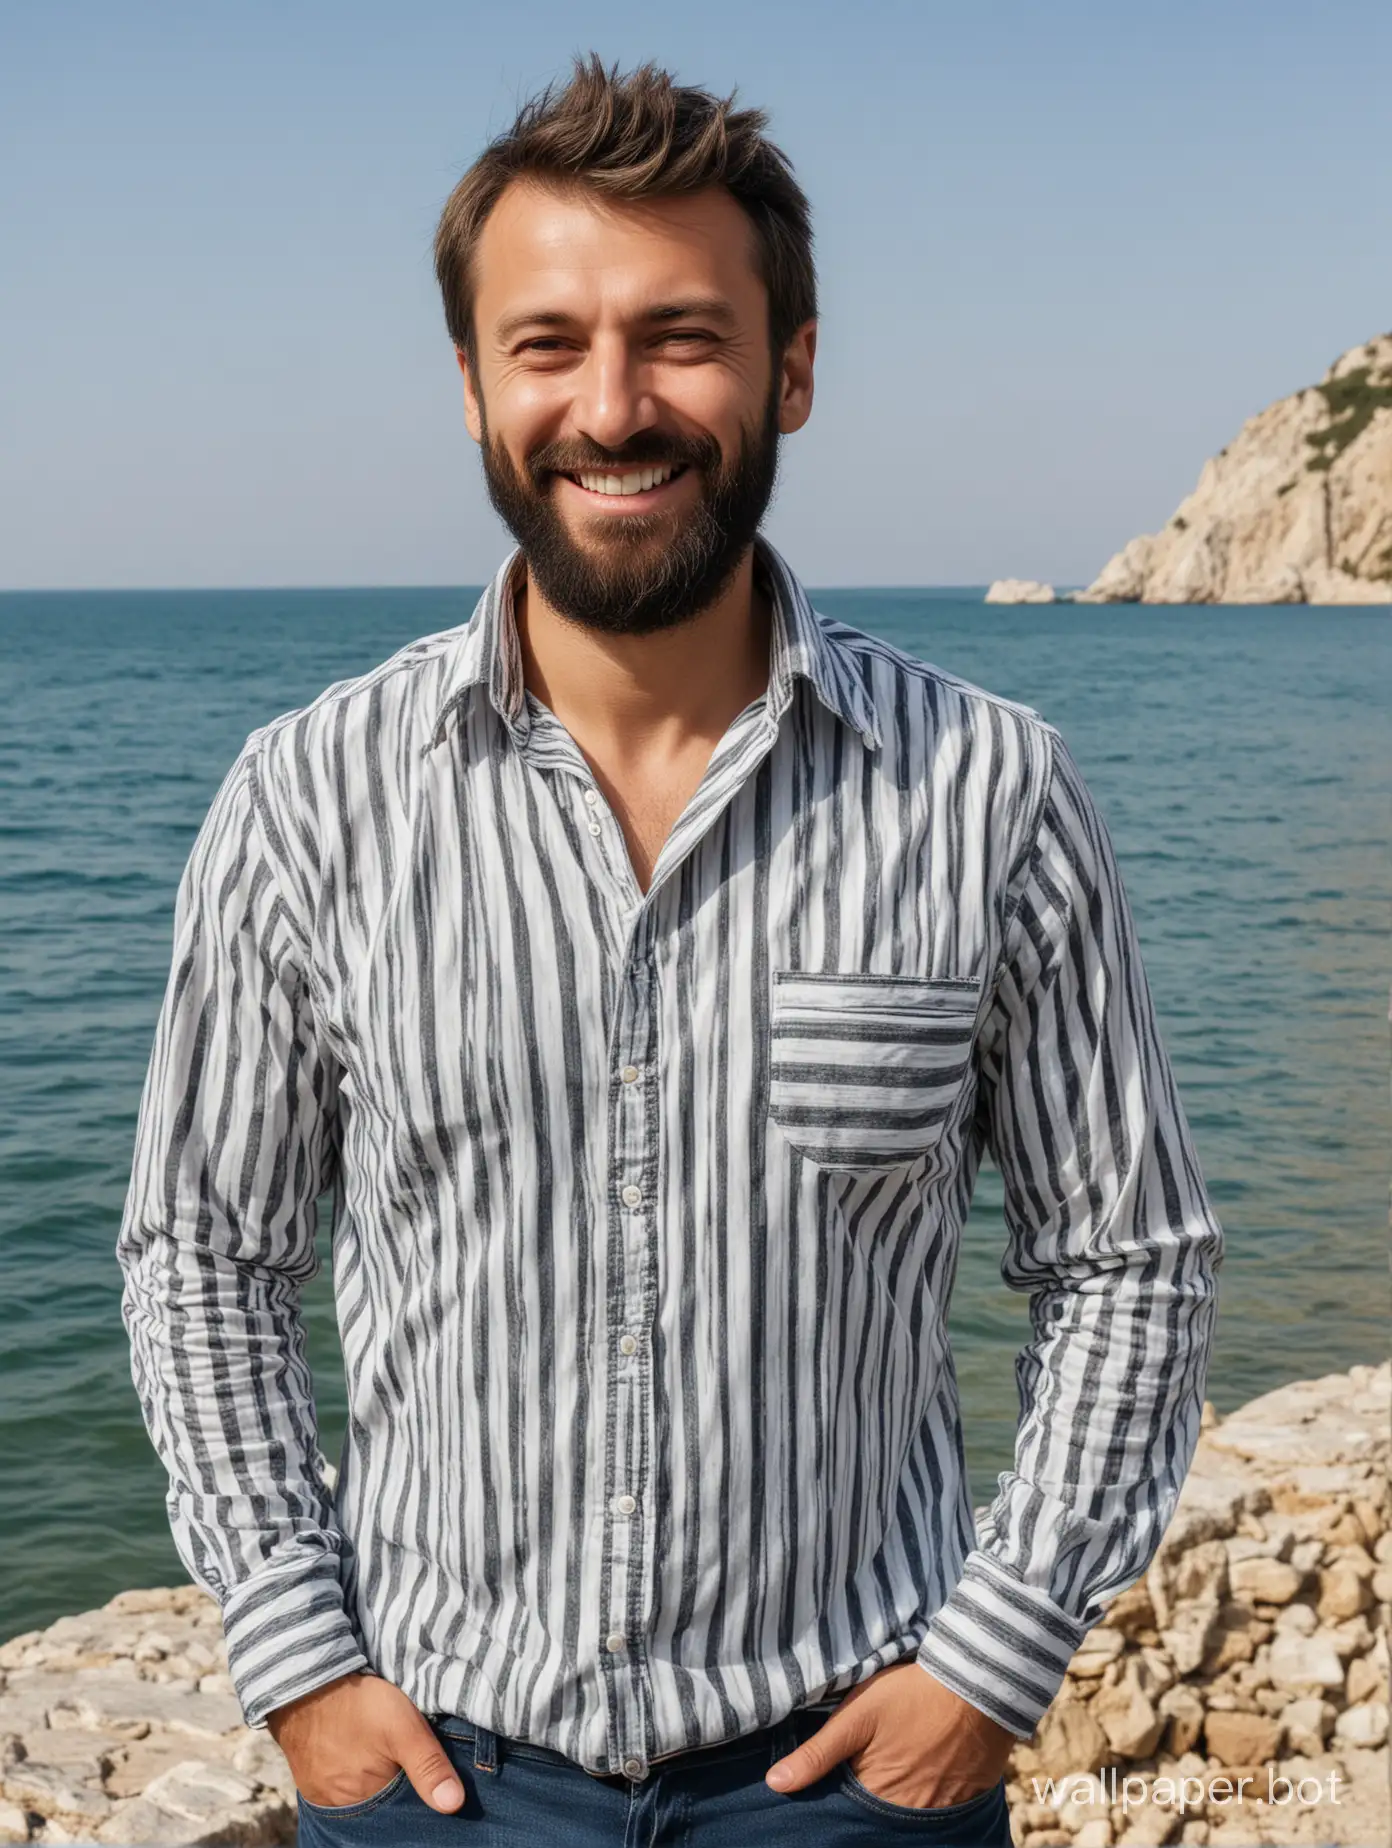 чёрное море, Крым, взрослый мужчина с бородой в тельняшке, в полный рост, улыбка